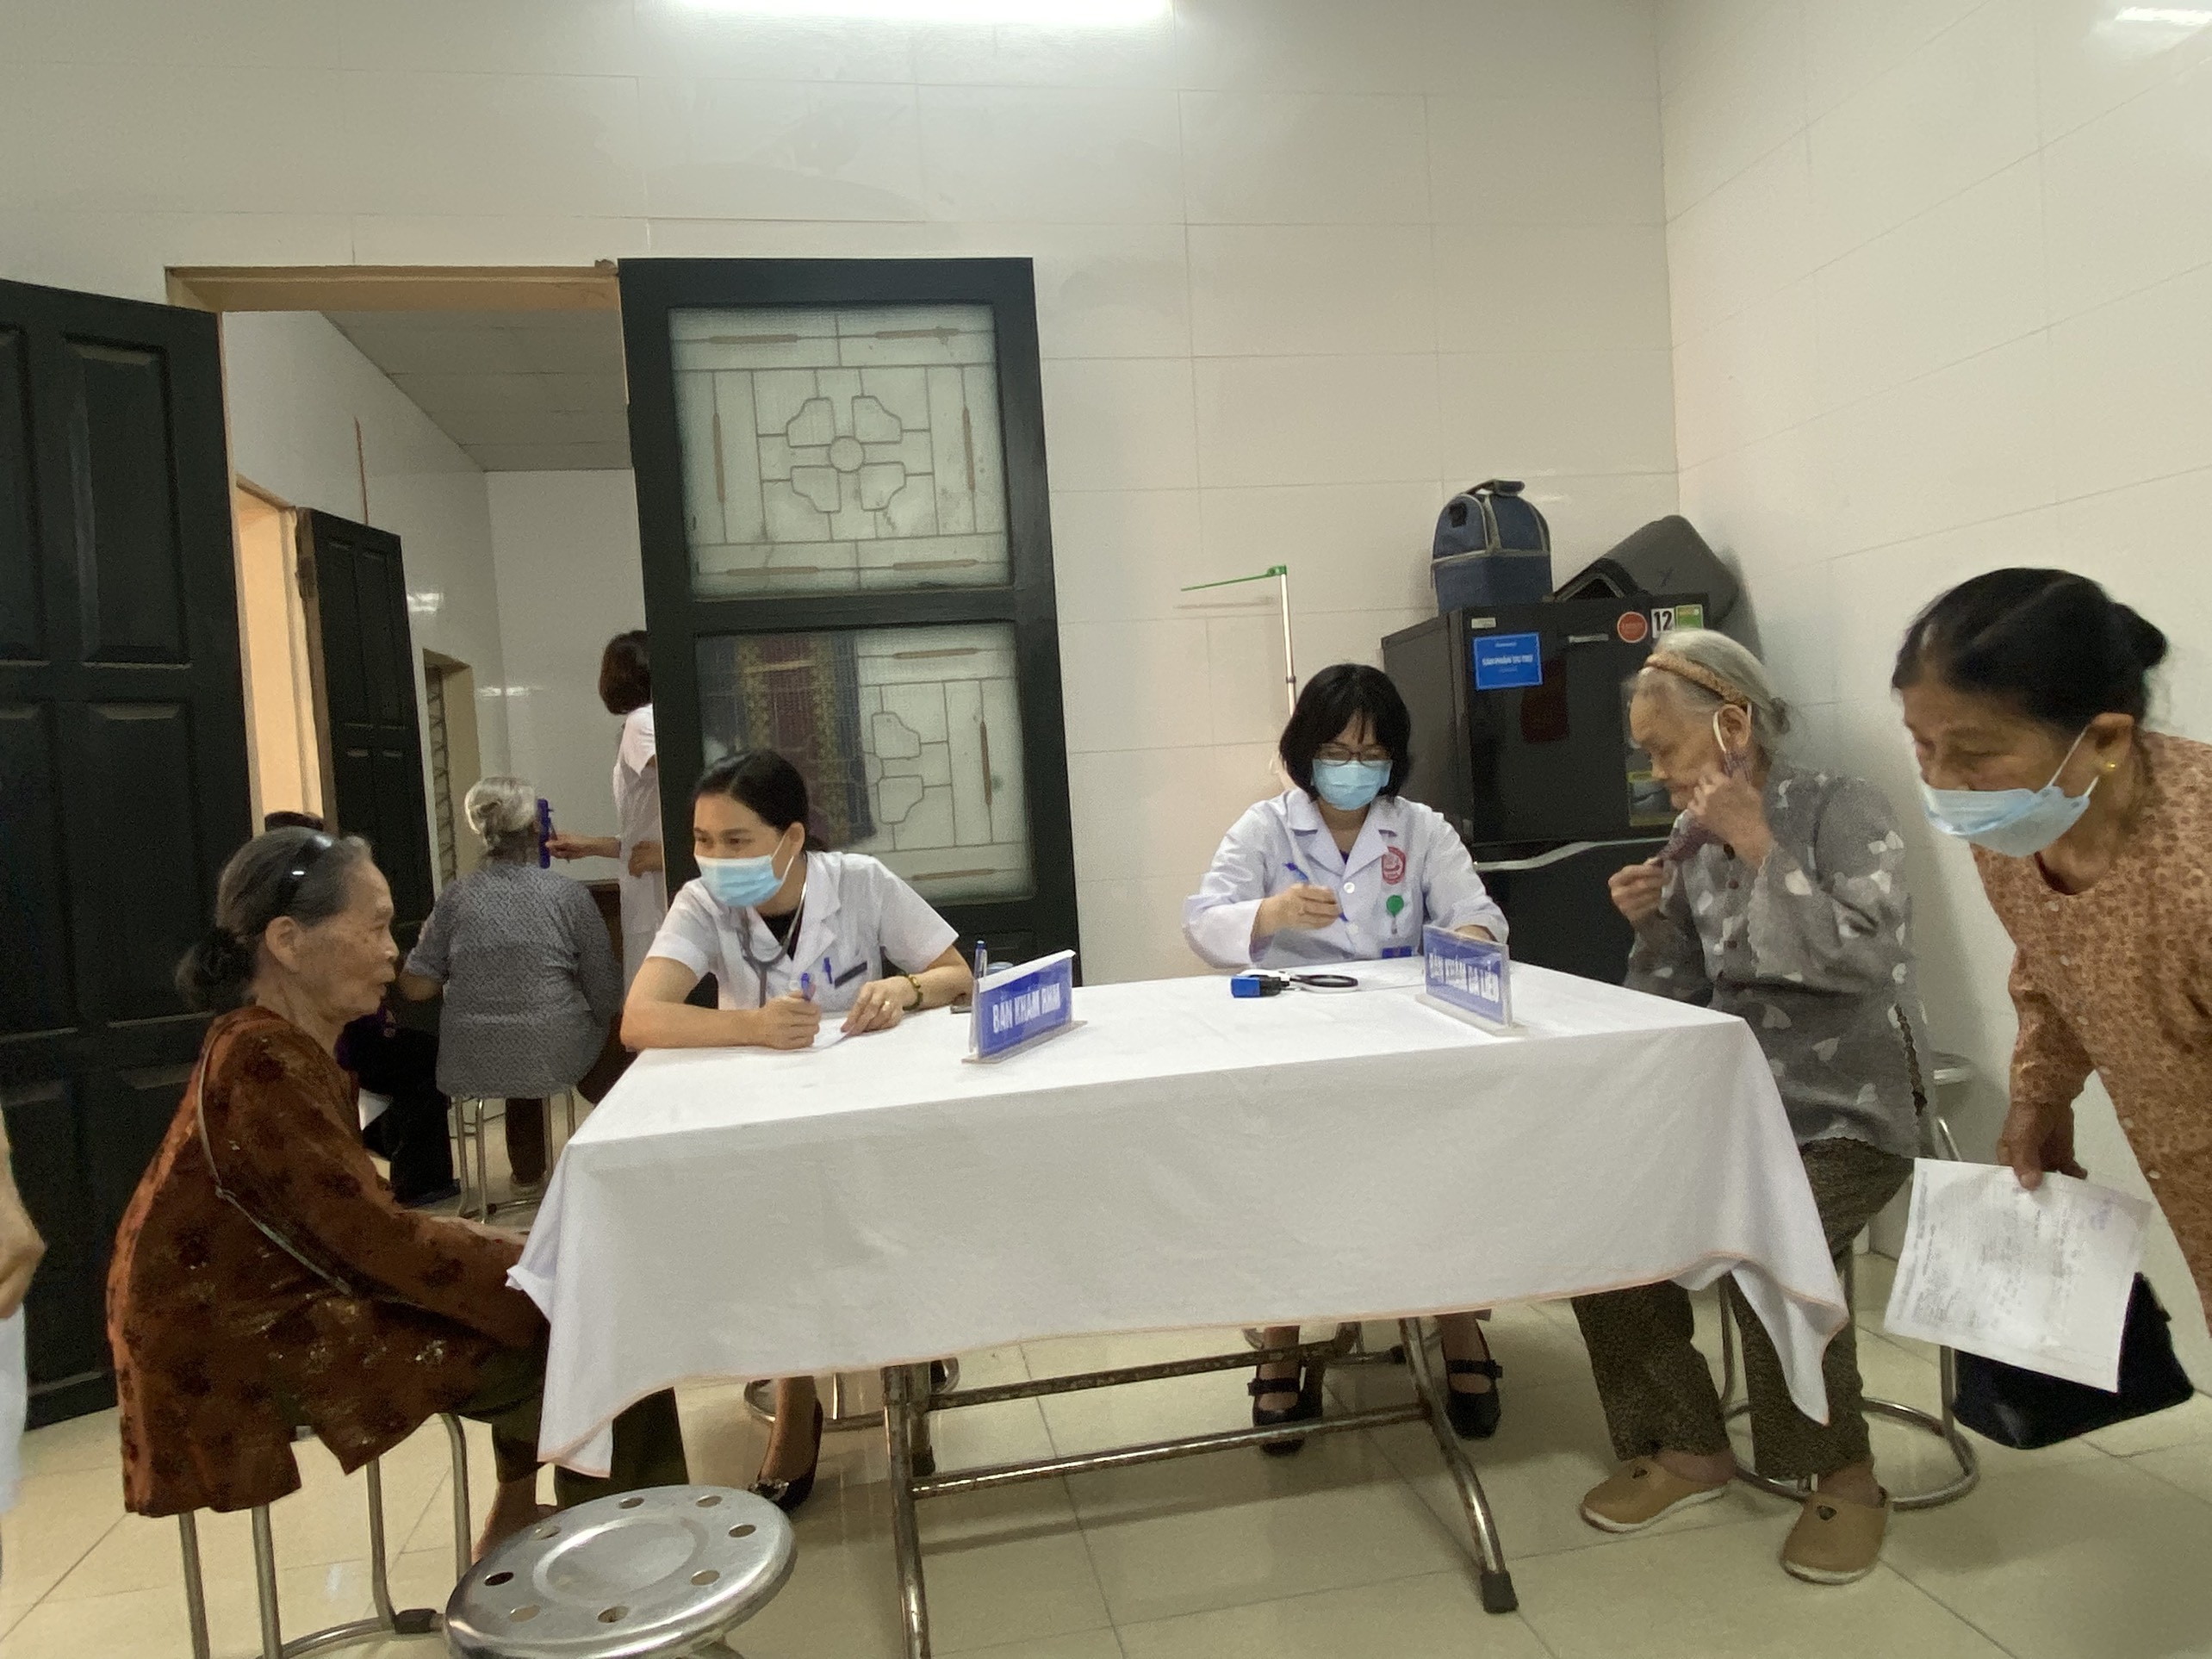 Trung tâm Kiểm soát bệnh tật: Khám bệnh miễn phí cho bệnh nhân gia đình chính sách tại phường Thọ...|https://kiemsoatbenhtatbacgiang.vn/en_US/chi-tiet-tin-tuc/-/asset_publisher/M0UUAFstbTMq/content/trung-tam-kiem-soat-benh-tat-kham-benh-mien-phi-cho-benh-nhan-gia-inh-chinh-sach-tai-phuong-tho-xuong